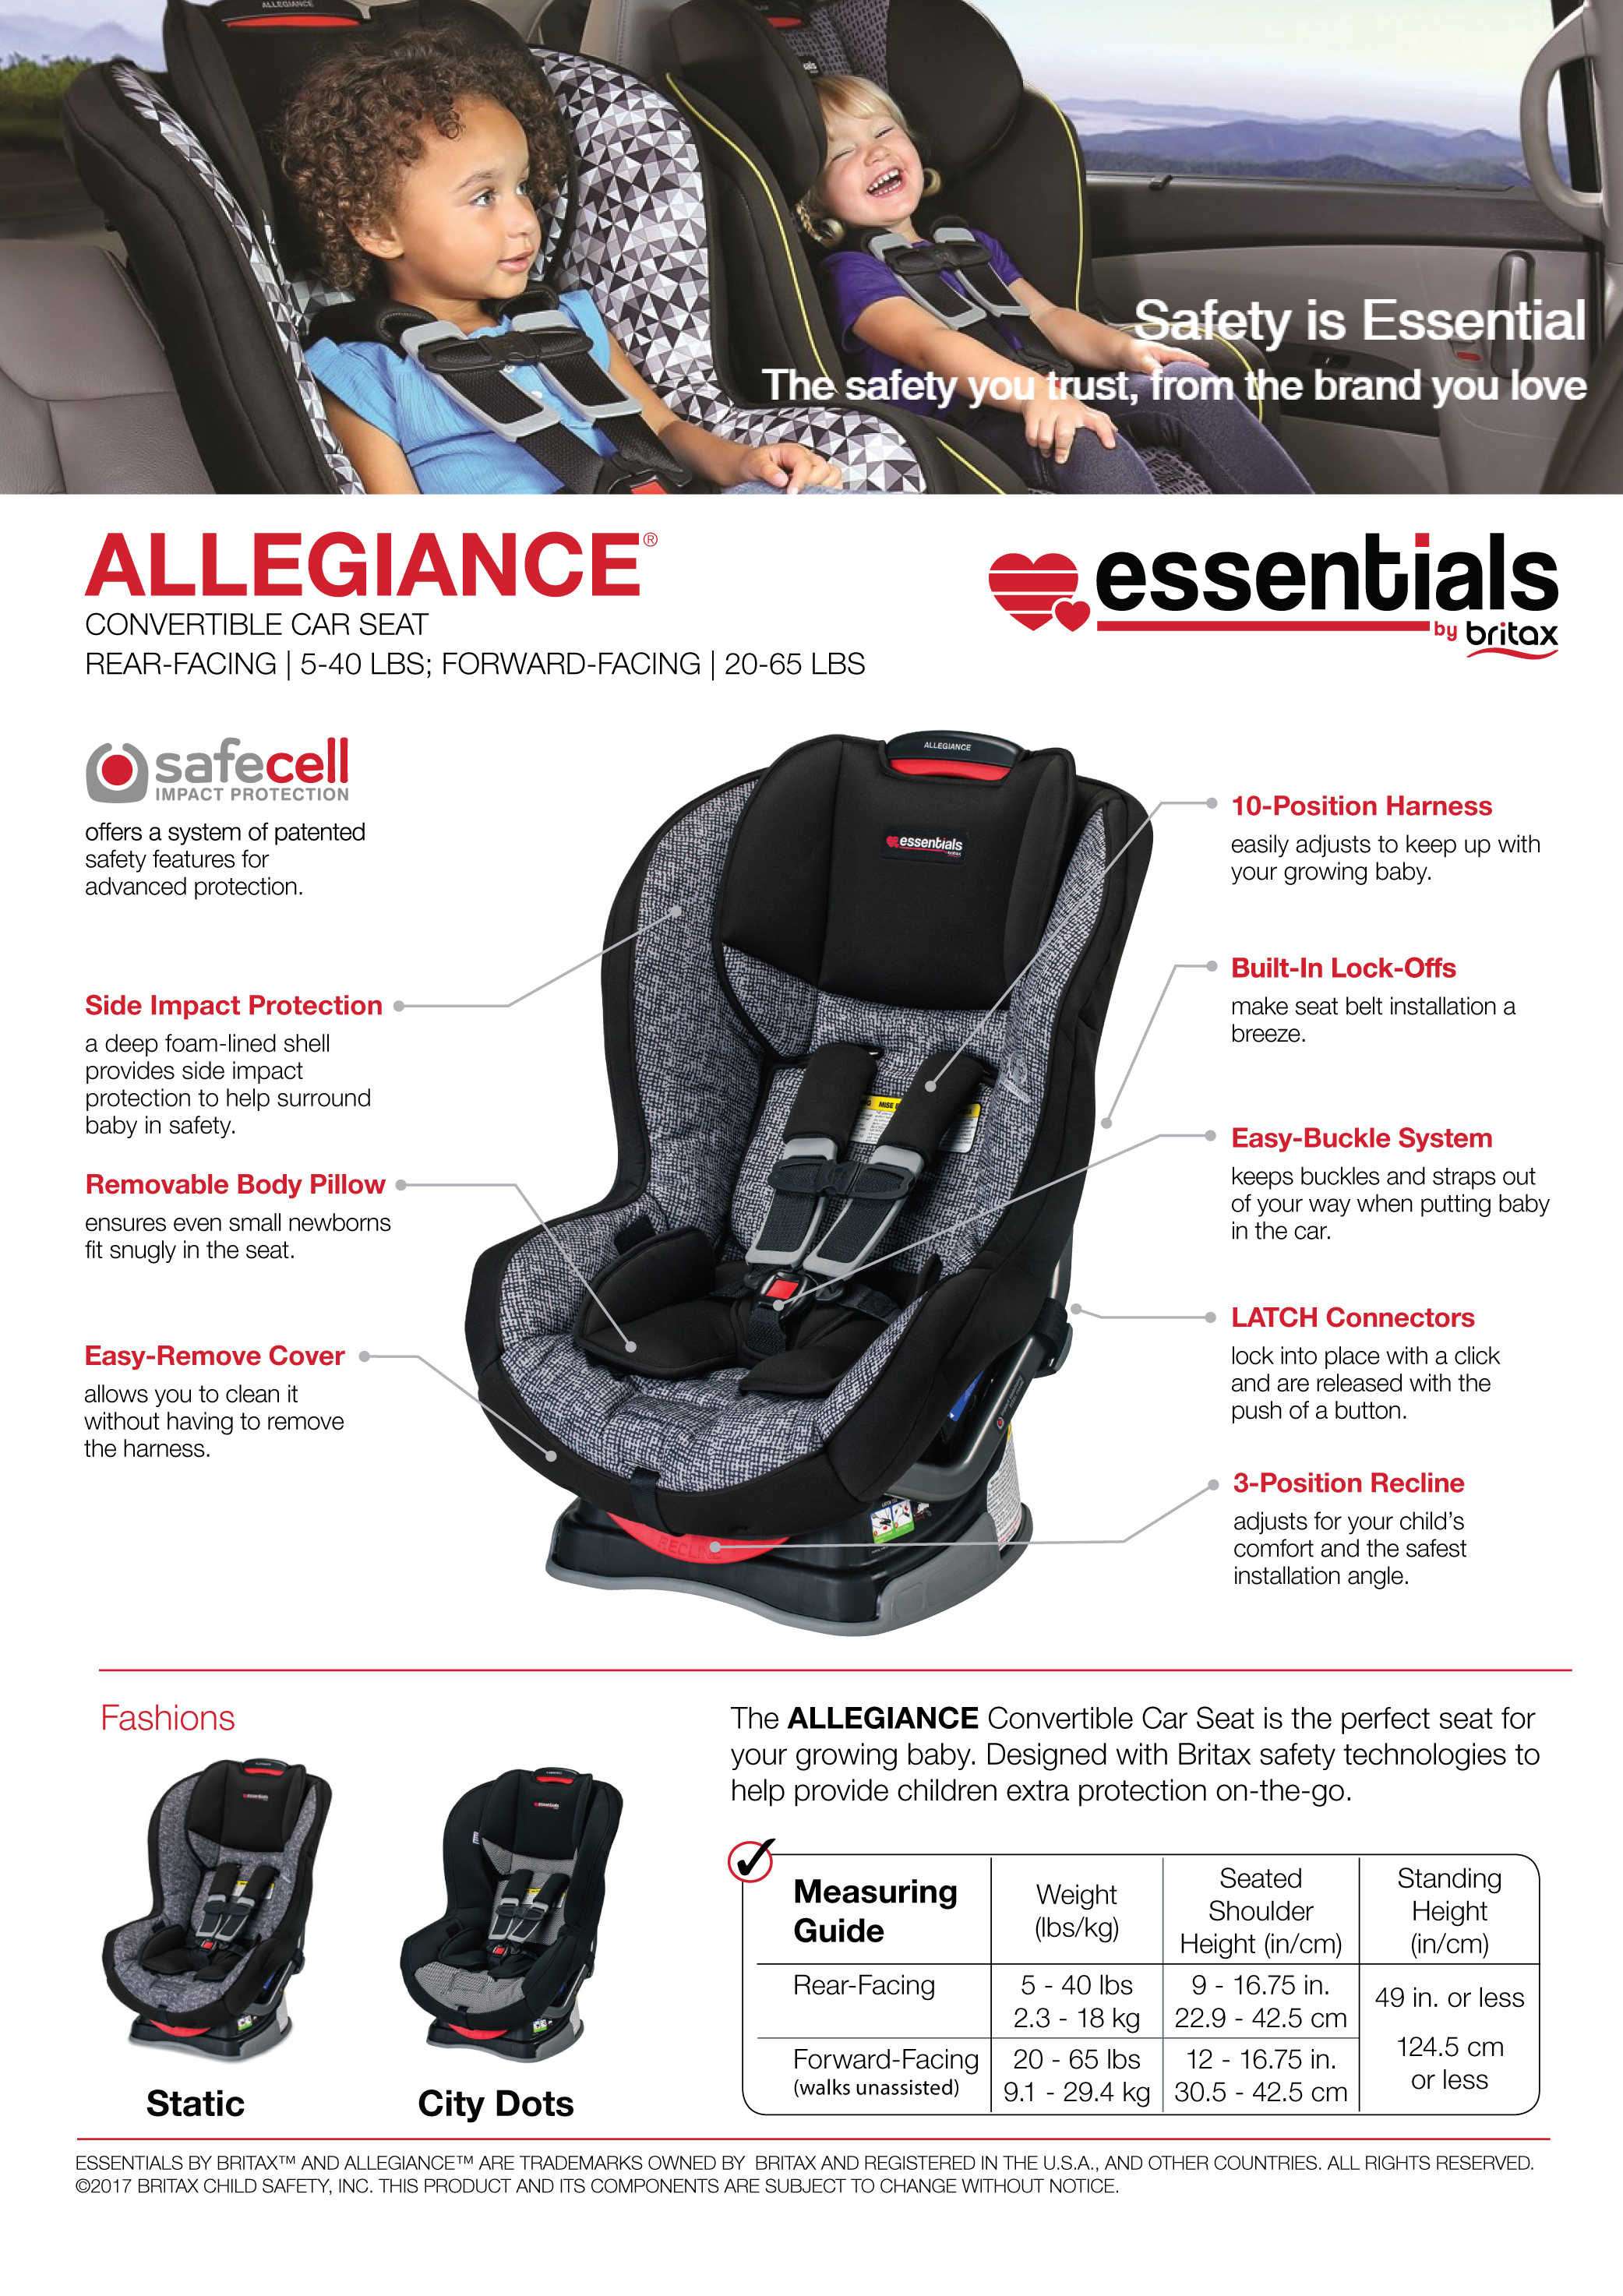 essentials by britax allegiance convertible car seat